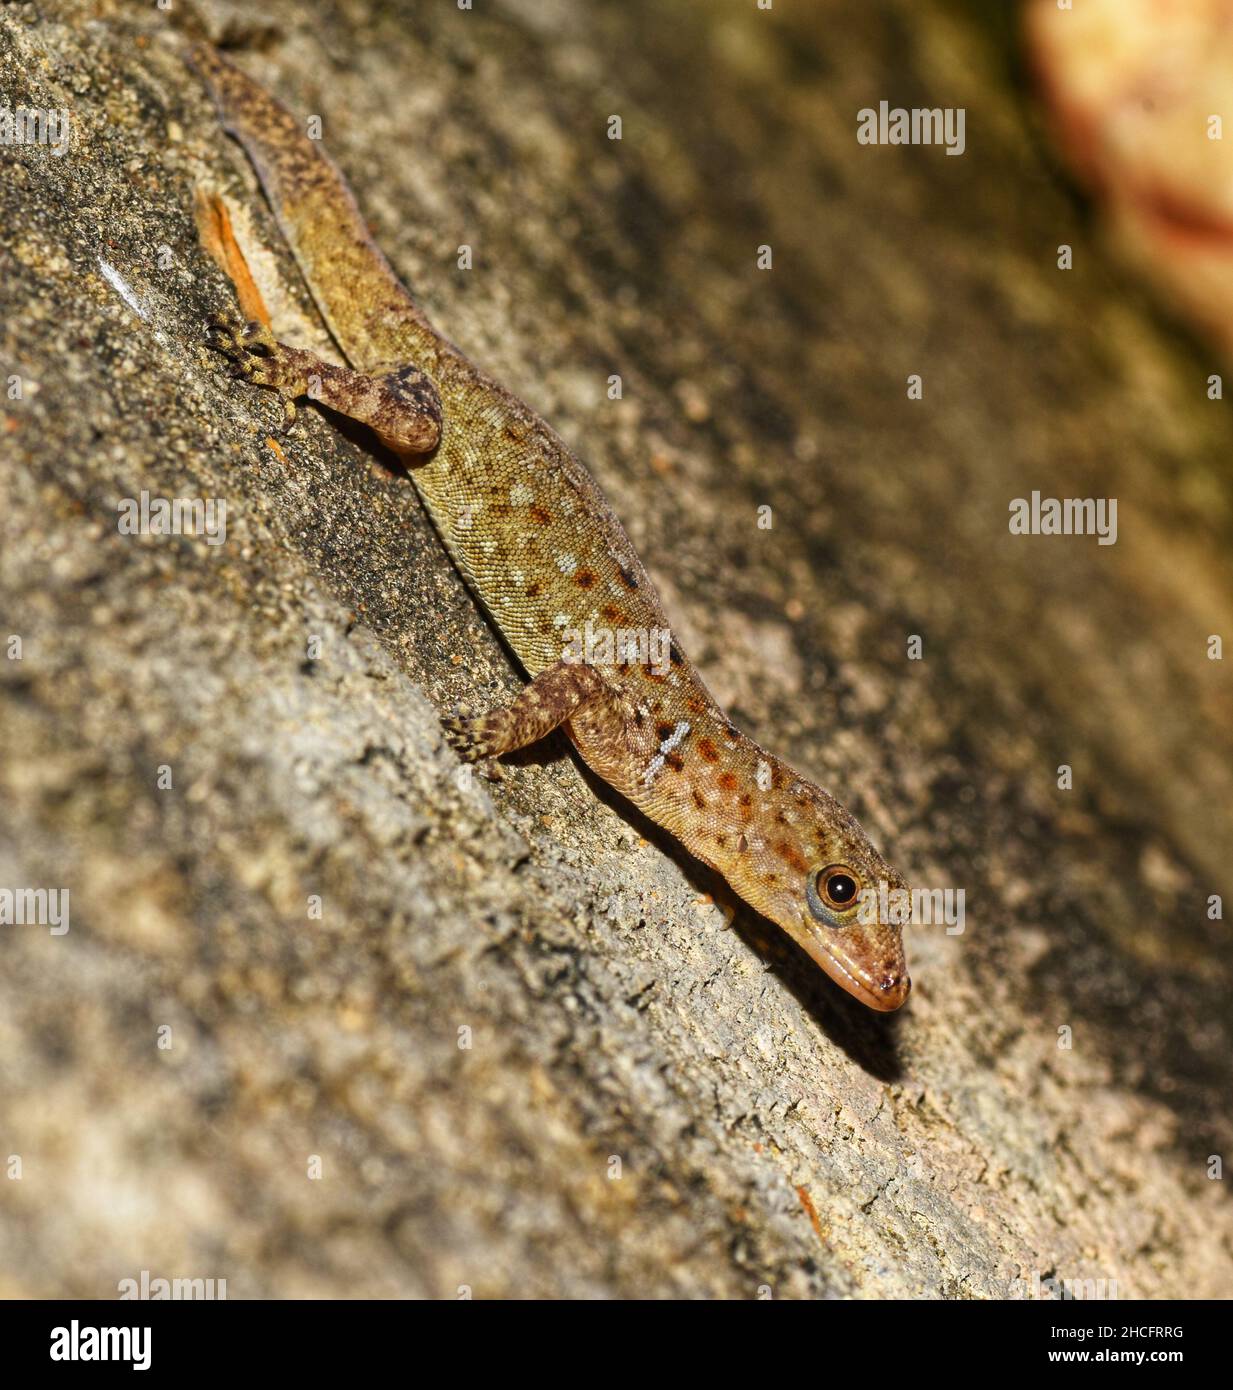 Wiegmann's striped gecko scientifically known as Gonatodes vittatus. This photo was taken on the Caribbean island of Trinidad. Stock Photo